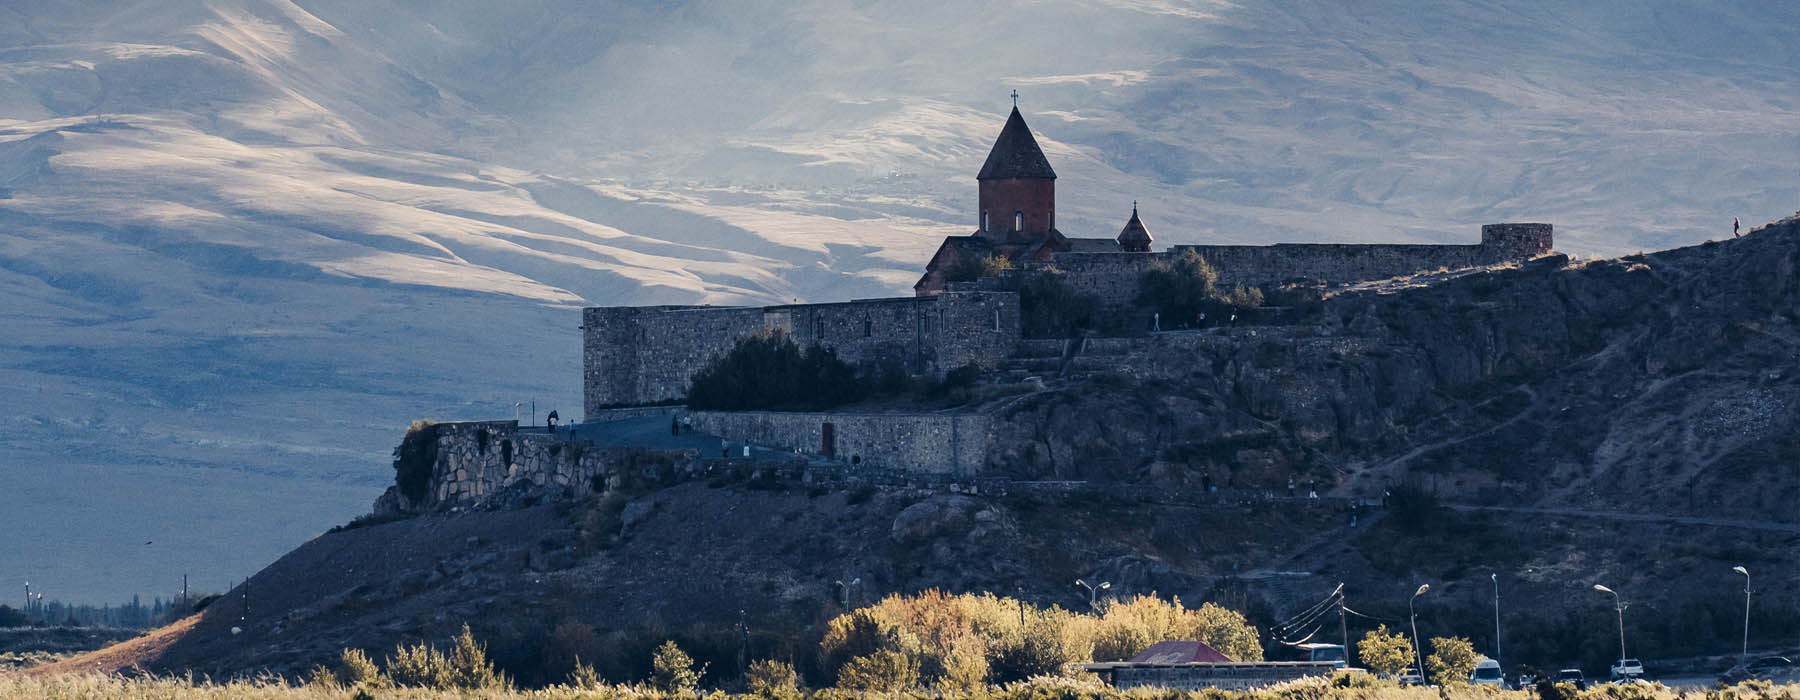 Armenia<br class="hidden-md hidden-lg" /> Near Frontiers Holidays